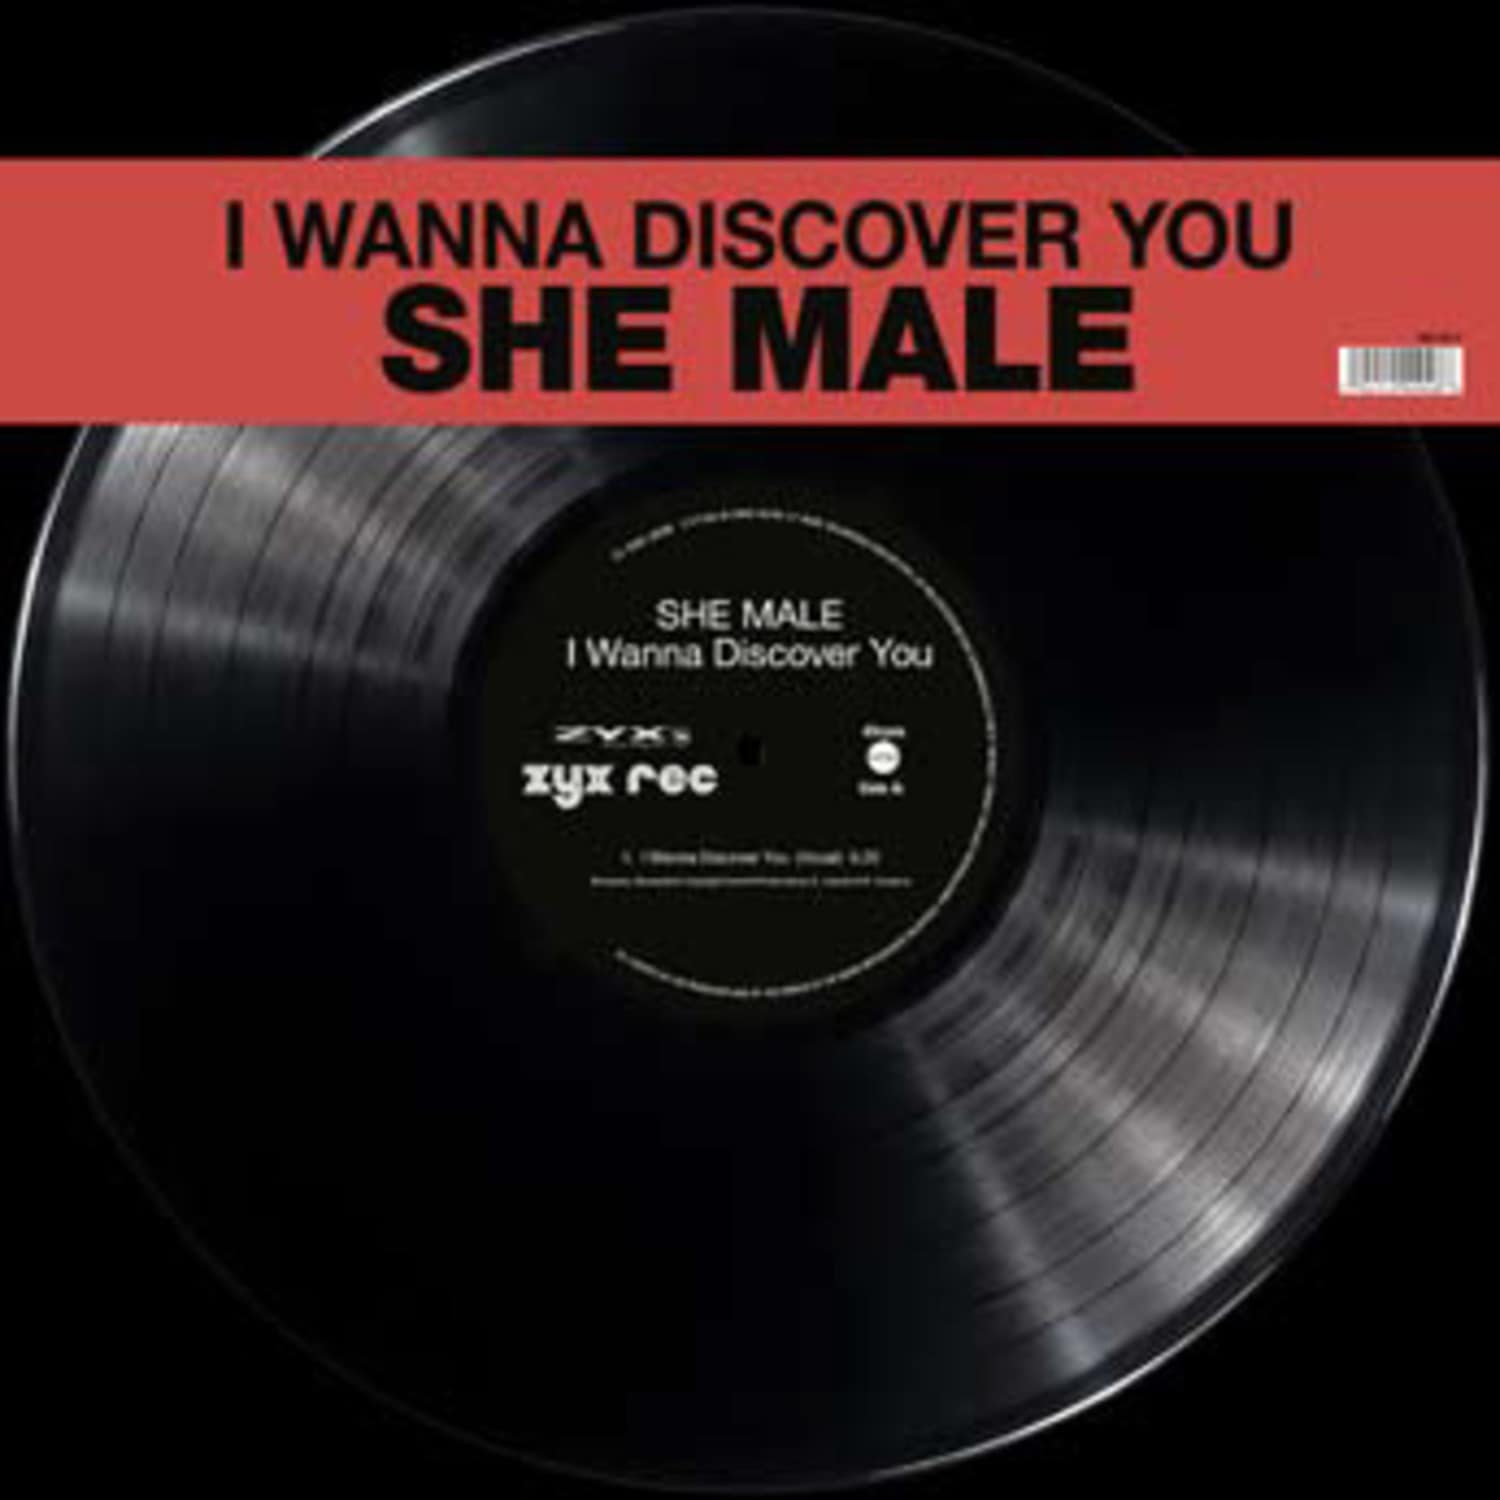 She Male - I WANNA DISCOVER YOU